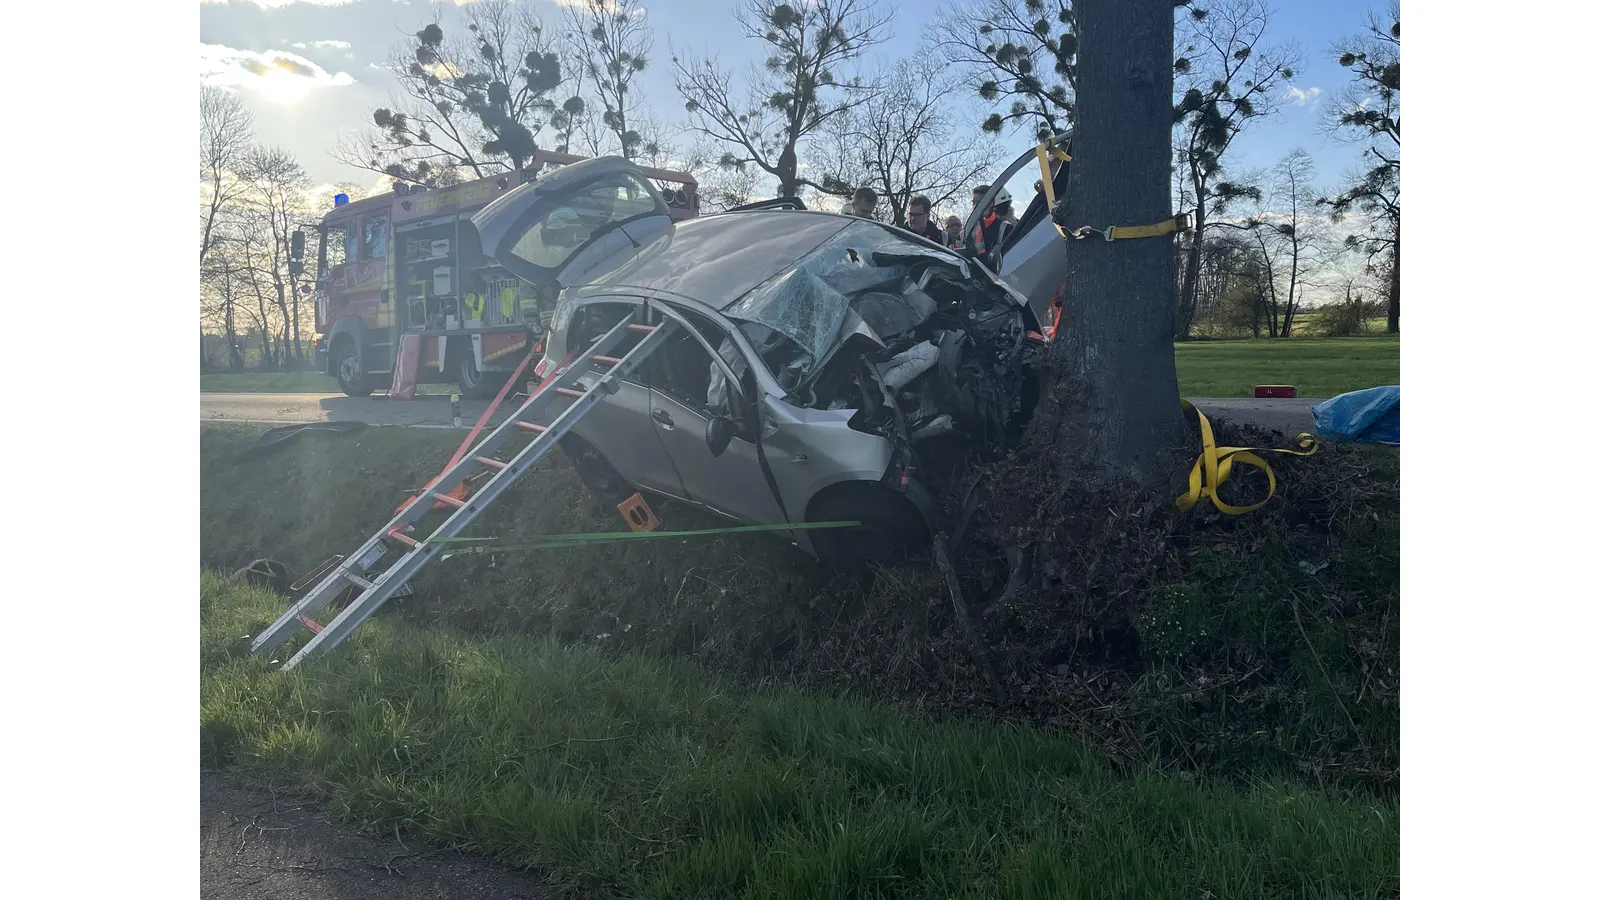 Das Auto hatte den Baum frontal getroffen und die Rettungskräfte sicherten das Fahrzeug gegen umkippen. (Foto: privat)